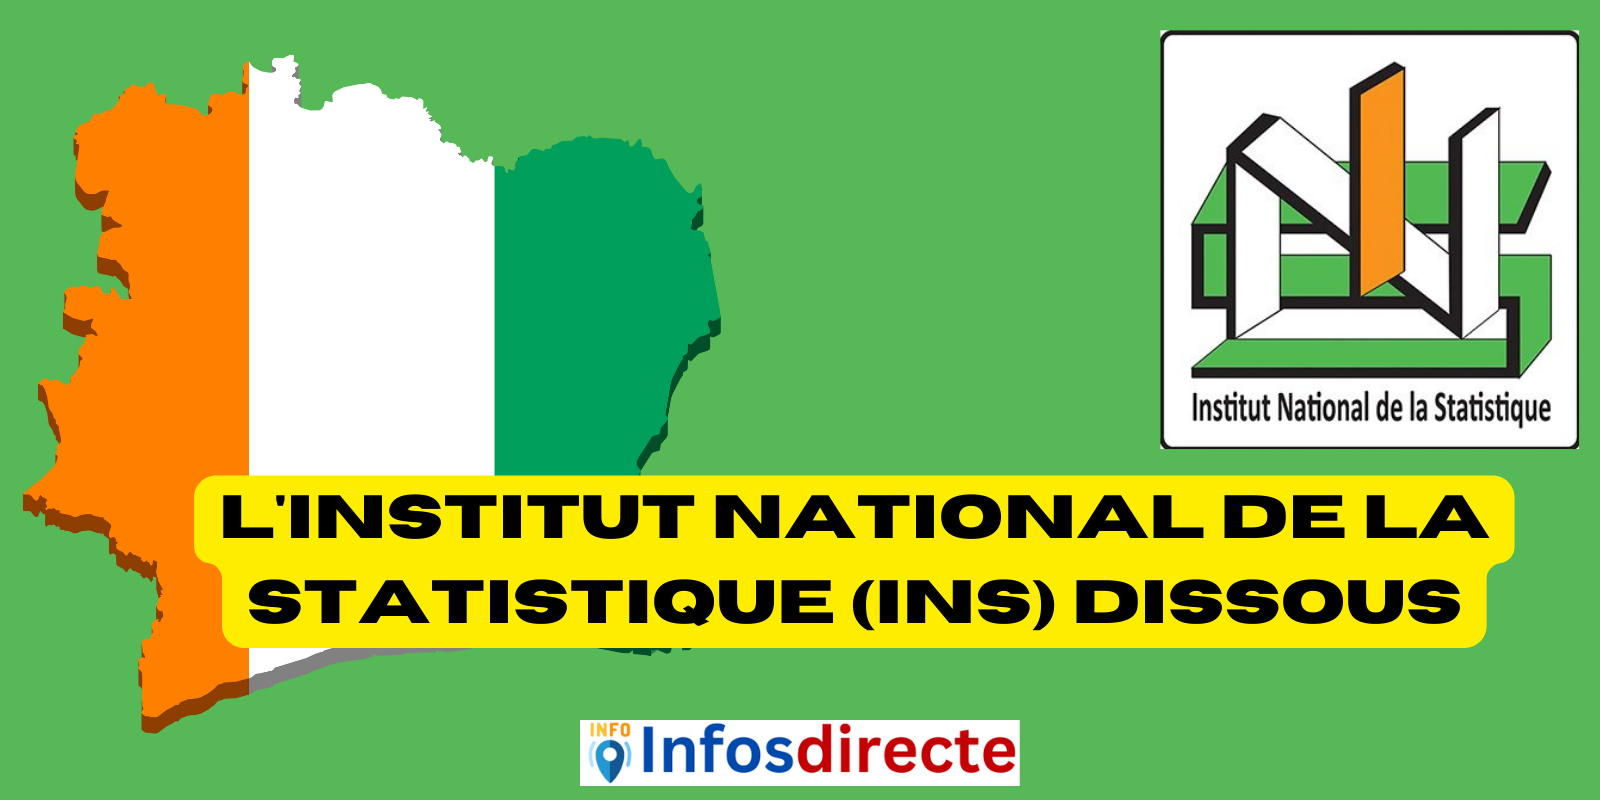 L'Institut national de la statistique (INS) dissous